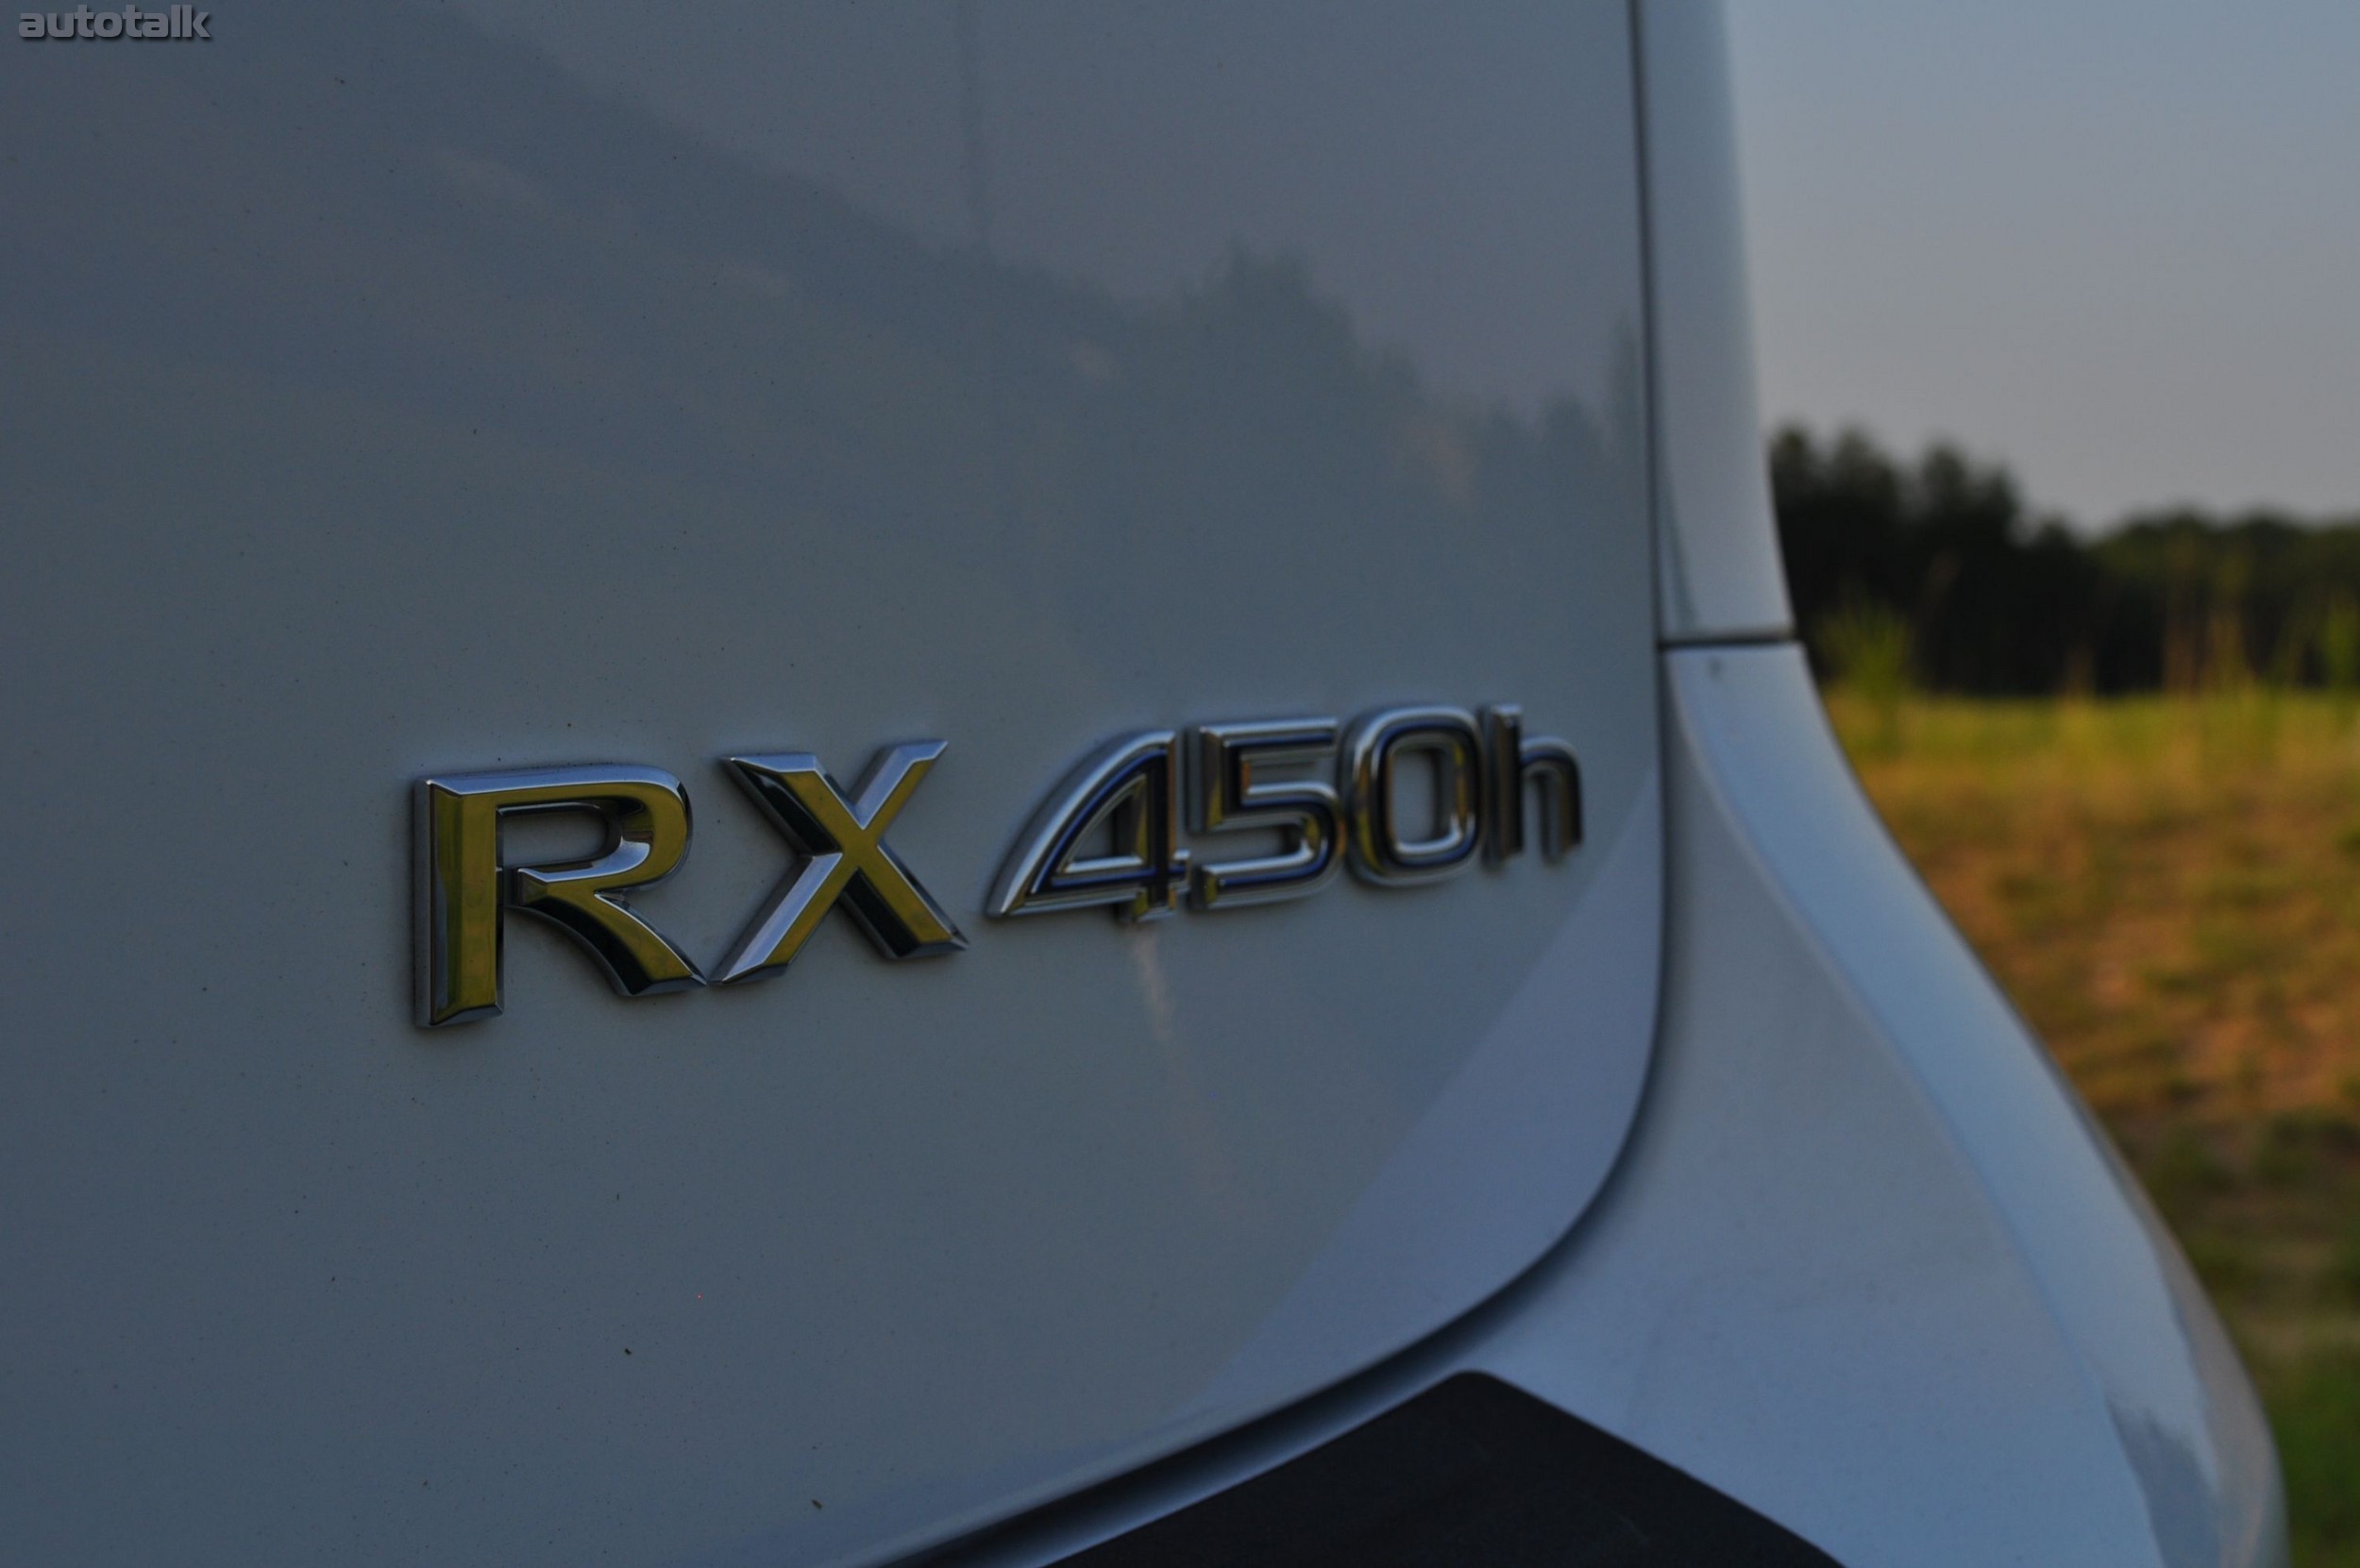 2010 Lexus RX450h Review